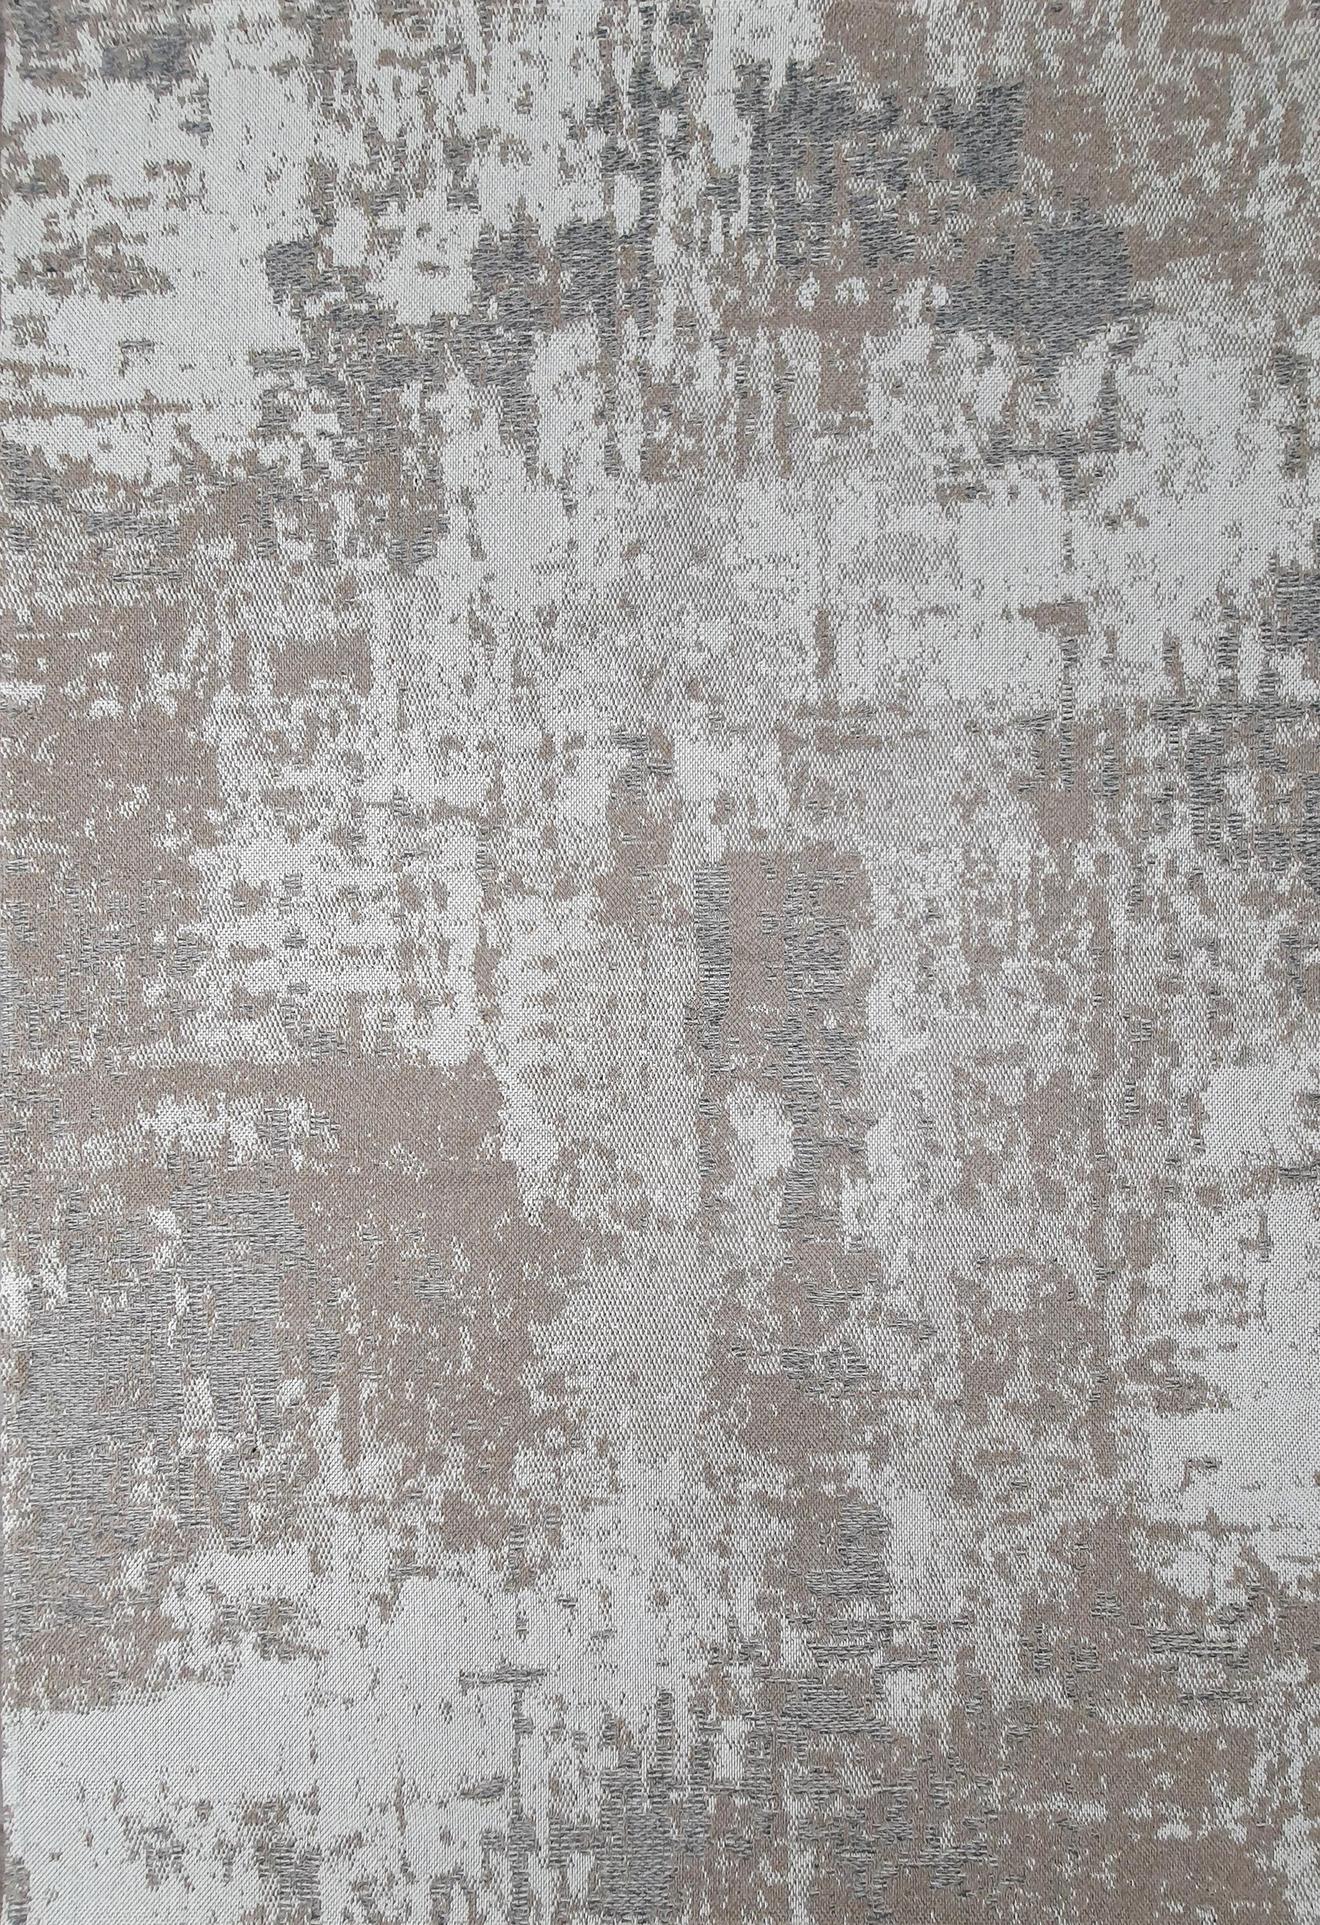 Antika matto 66x150 cm, pellava tuote hintaan 15€ liikkeestä MASKU